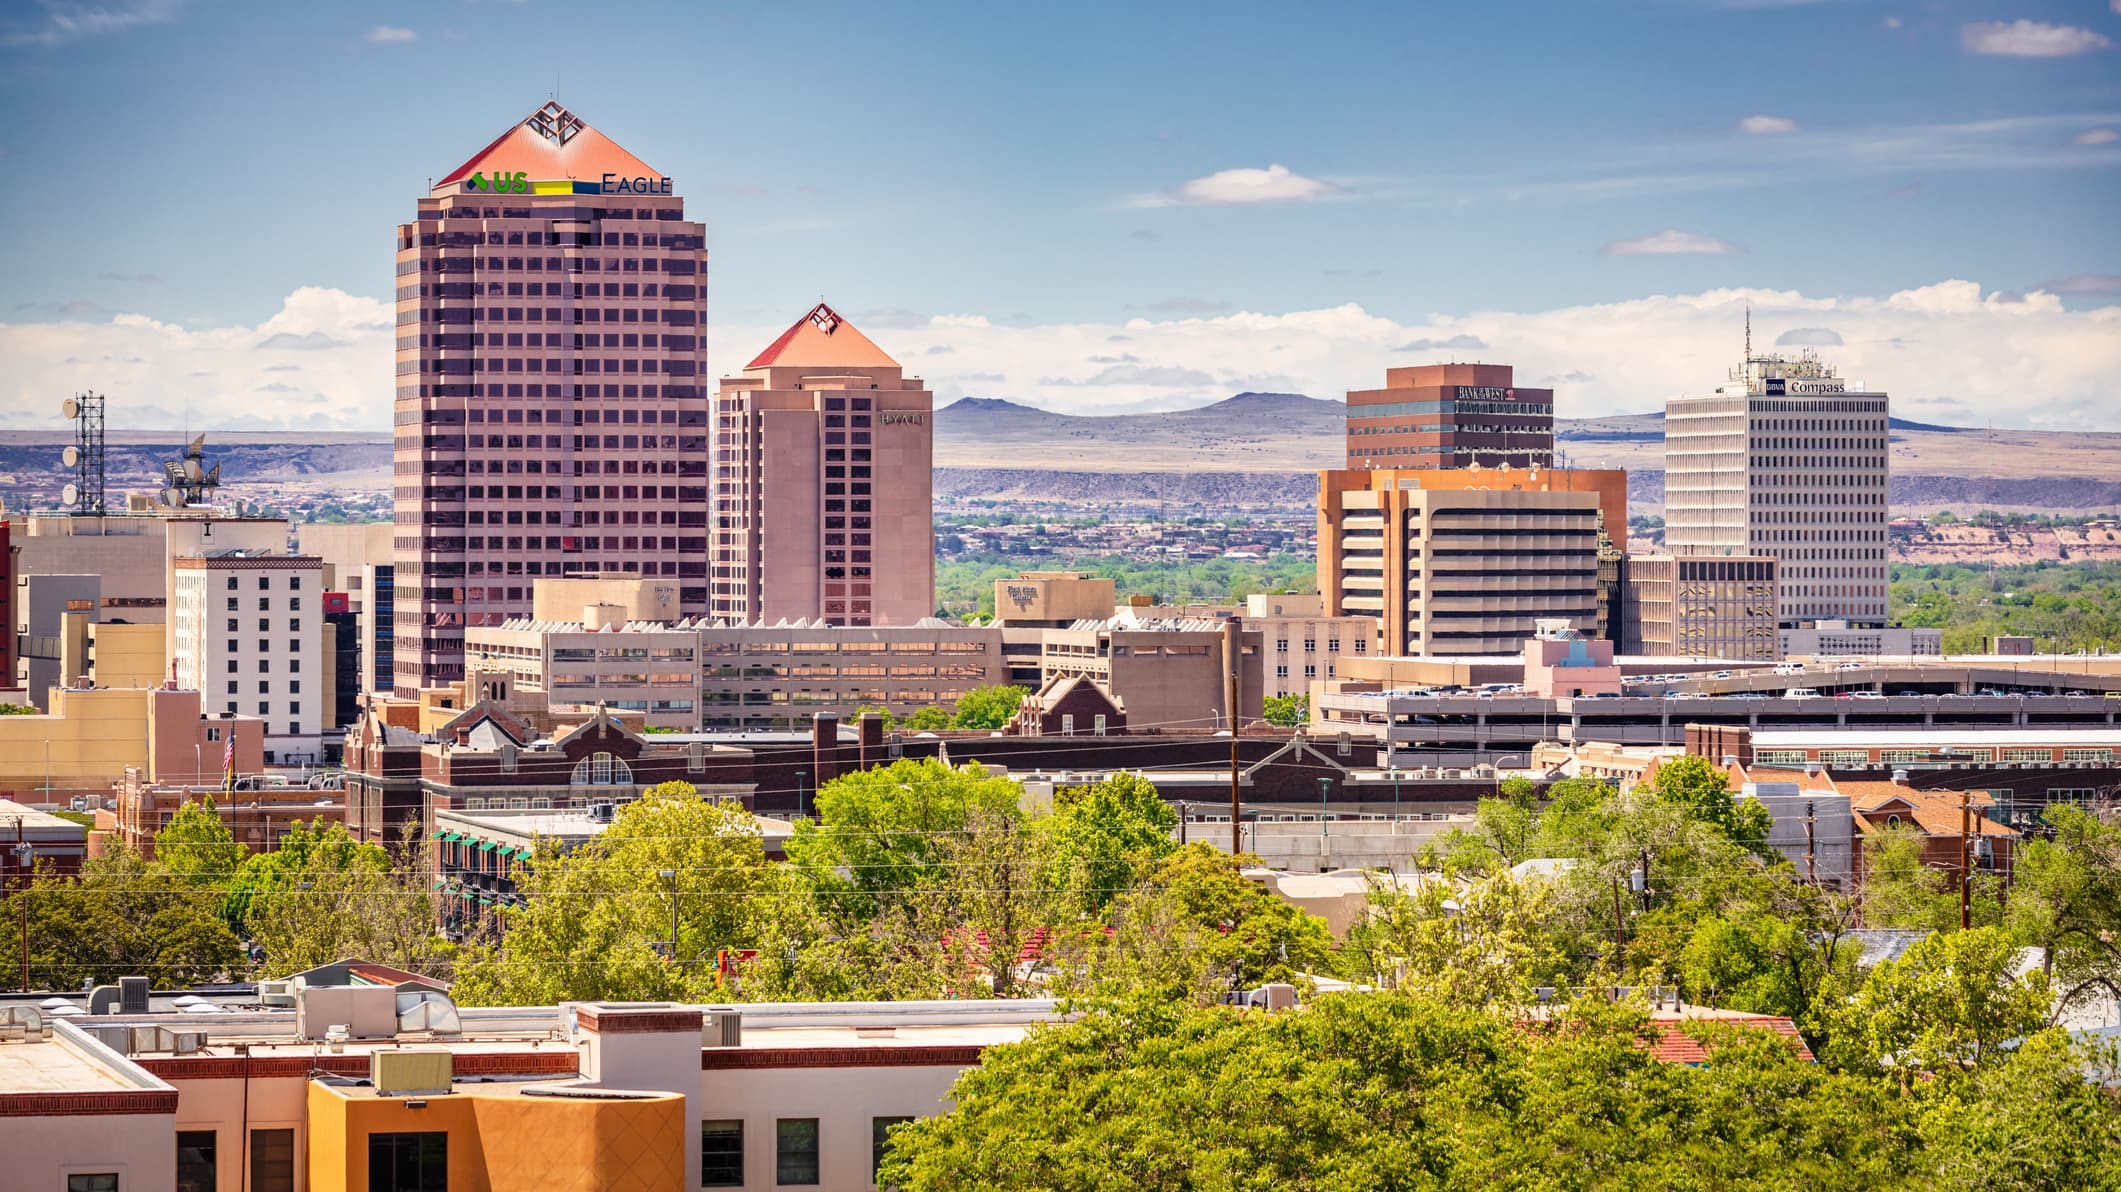 Albuquerque city skyline